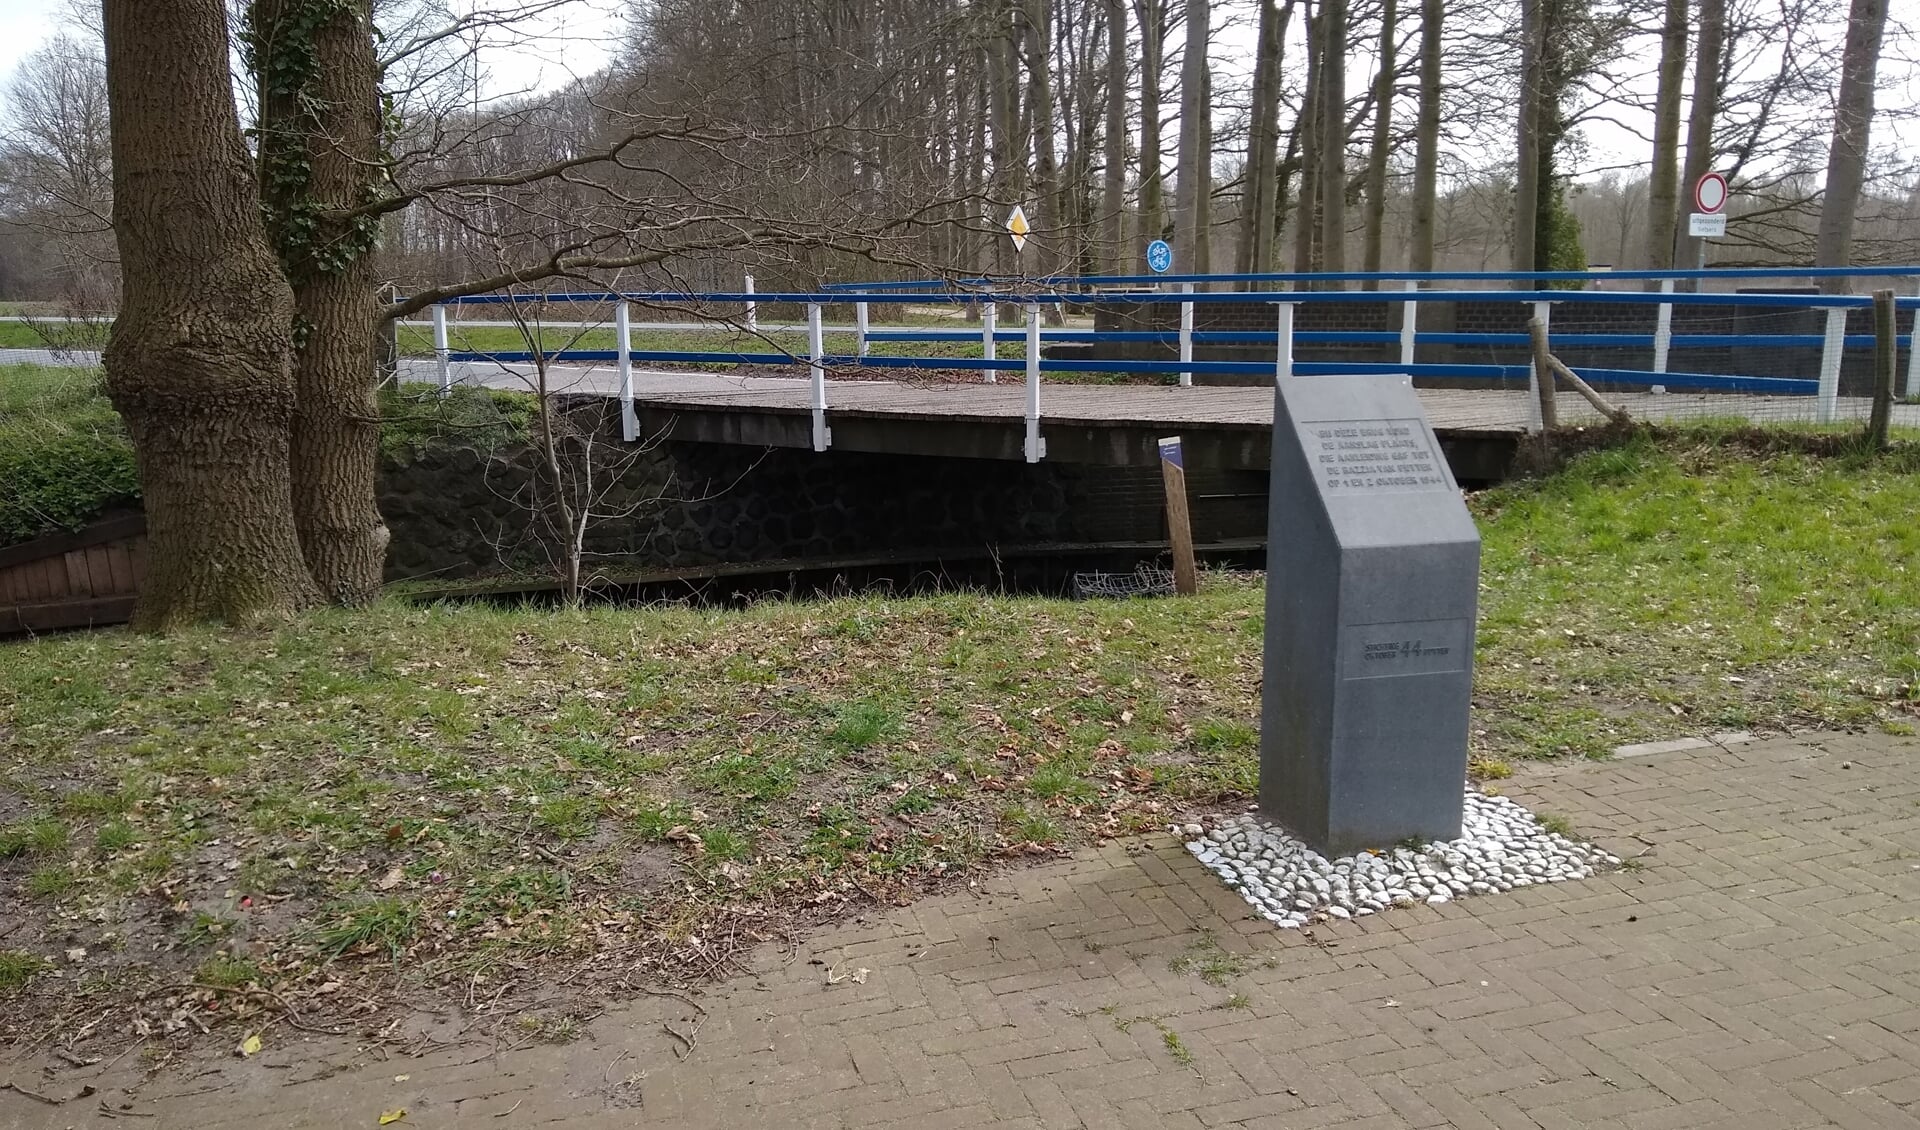 De plek van de aanslag bij de Oldenallerbrug met gedenksteen.